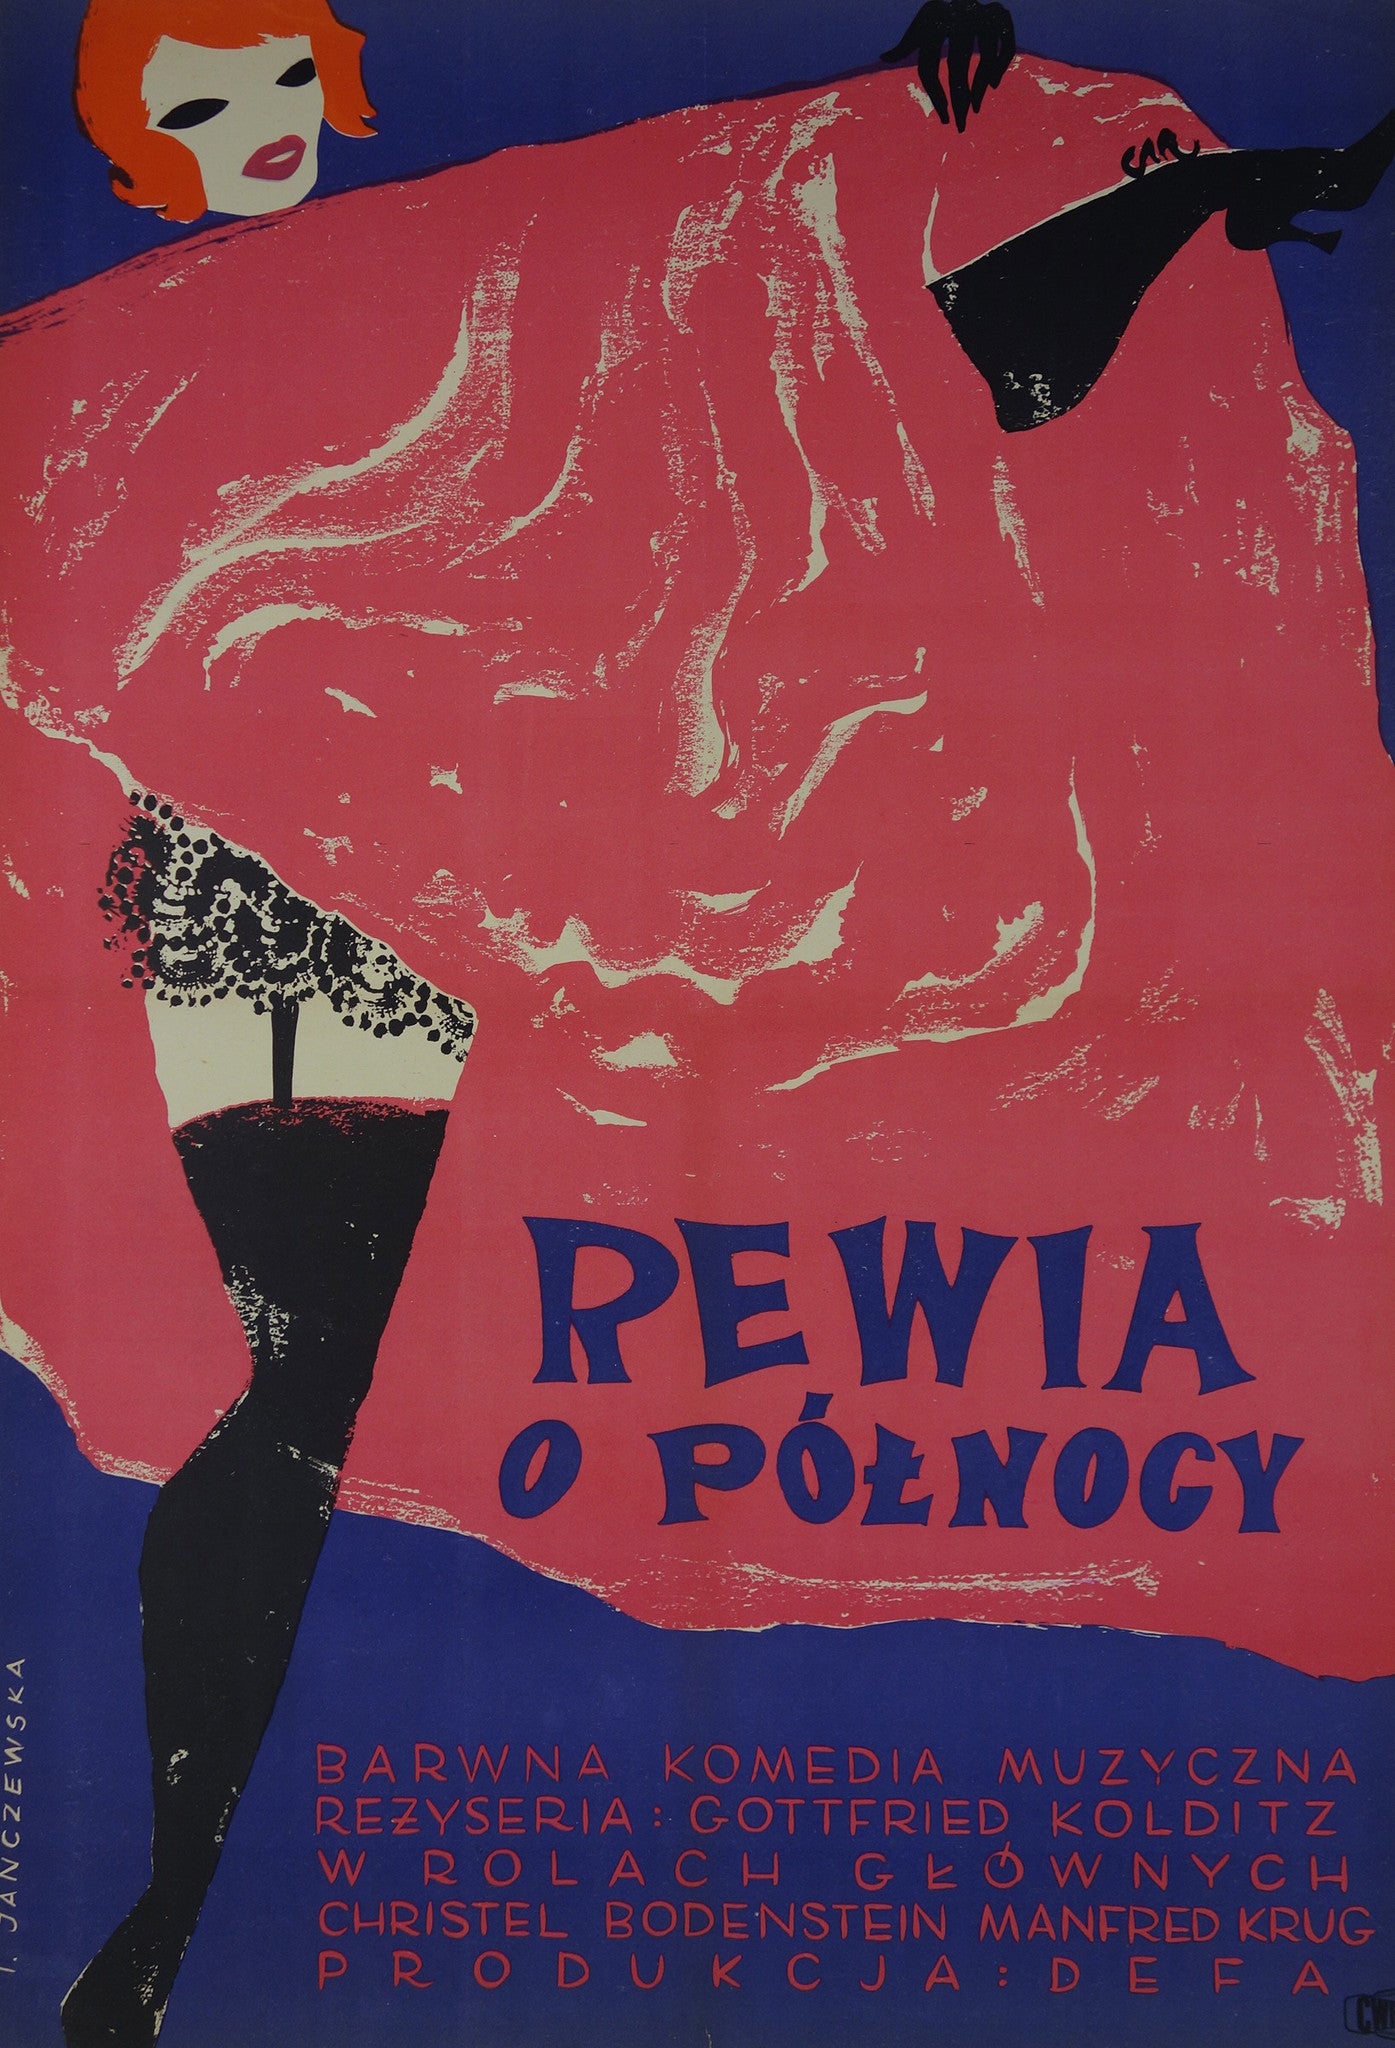 Rewia O Polnocy – Poster Museum